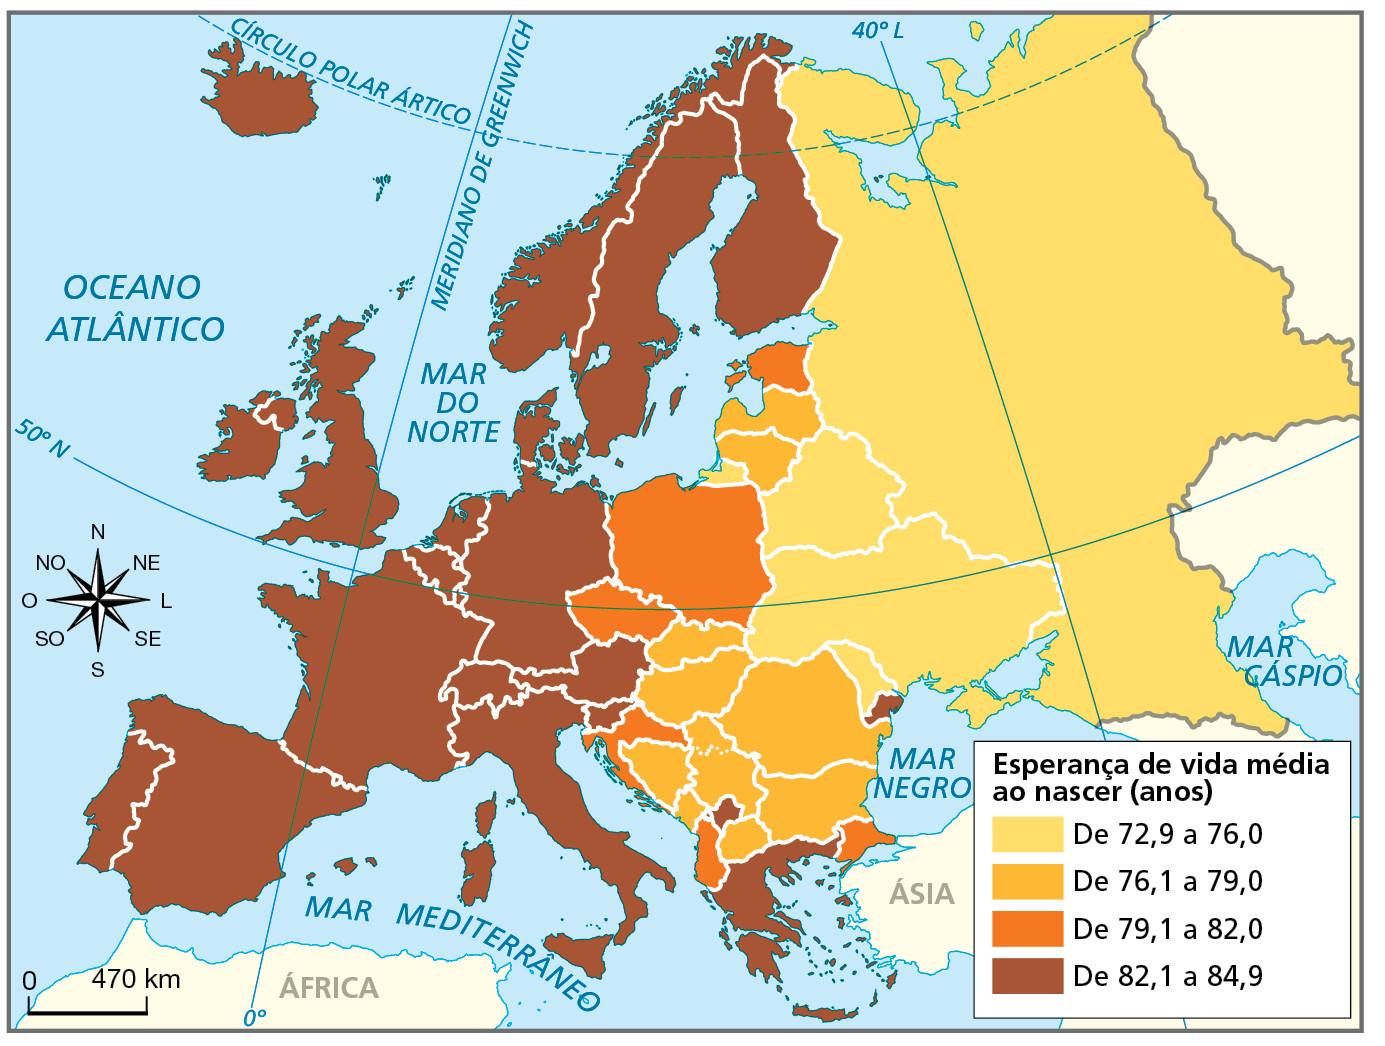 Mapa. Europa: esperança de vida média (em anos), 2025 a 2030 (estimativas). Mapa representando a esperança de vida média ao nascer da população do continente europeu.
Esperança de vida média ao nascer (em anos):
De 72,9 a 76 anos: Rússia, Belarus, Ucrânia e Moldávia.
De 76,1 a 79 anos: Romênia, Bulgária, Eslováquia, Hungria, Macedônia do Norte, Sérvia, Bósnia-Herzegovina, Montenegro, Lituânia e Letônia.
De 79,1 a 82 anos: Estônia, Polônia, República Tcheca, Croácia, Turquia e Albânia.
De 82,1 a 84,9 anos: Noruega, Suécia, Finlândia, Dinamarca, Reino Unido, Irlanda, Alemanha, Países Baixos, Bélgica, Áustria, Eslovênia, Itália, Suíça, França, Espanha, Grécia, Portugal, Islândia e Kosovo.
À esquerda, rosa dos ventos e, abaixo, escala de 0 a 470 quilômetros.